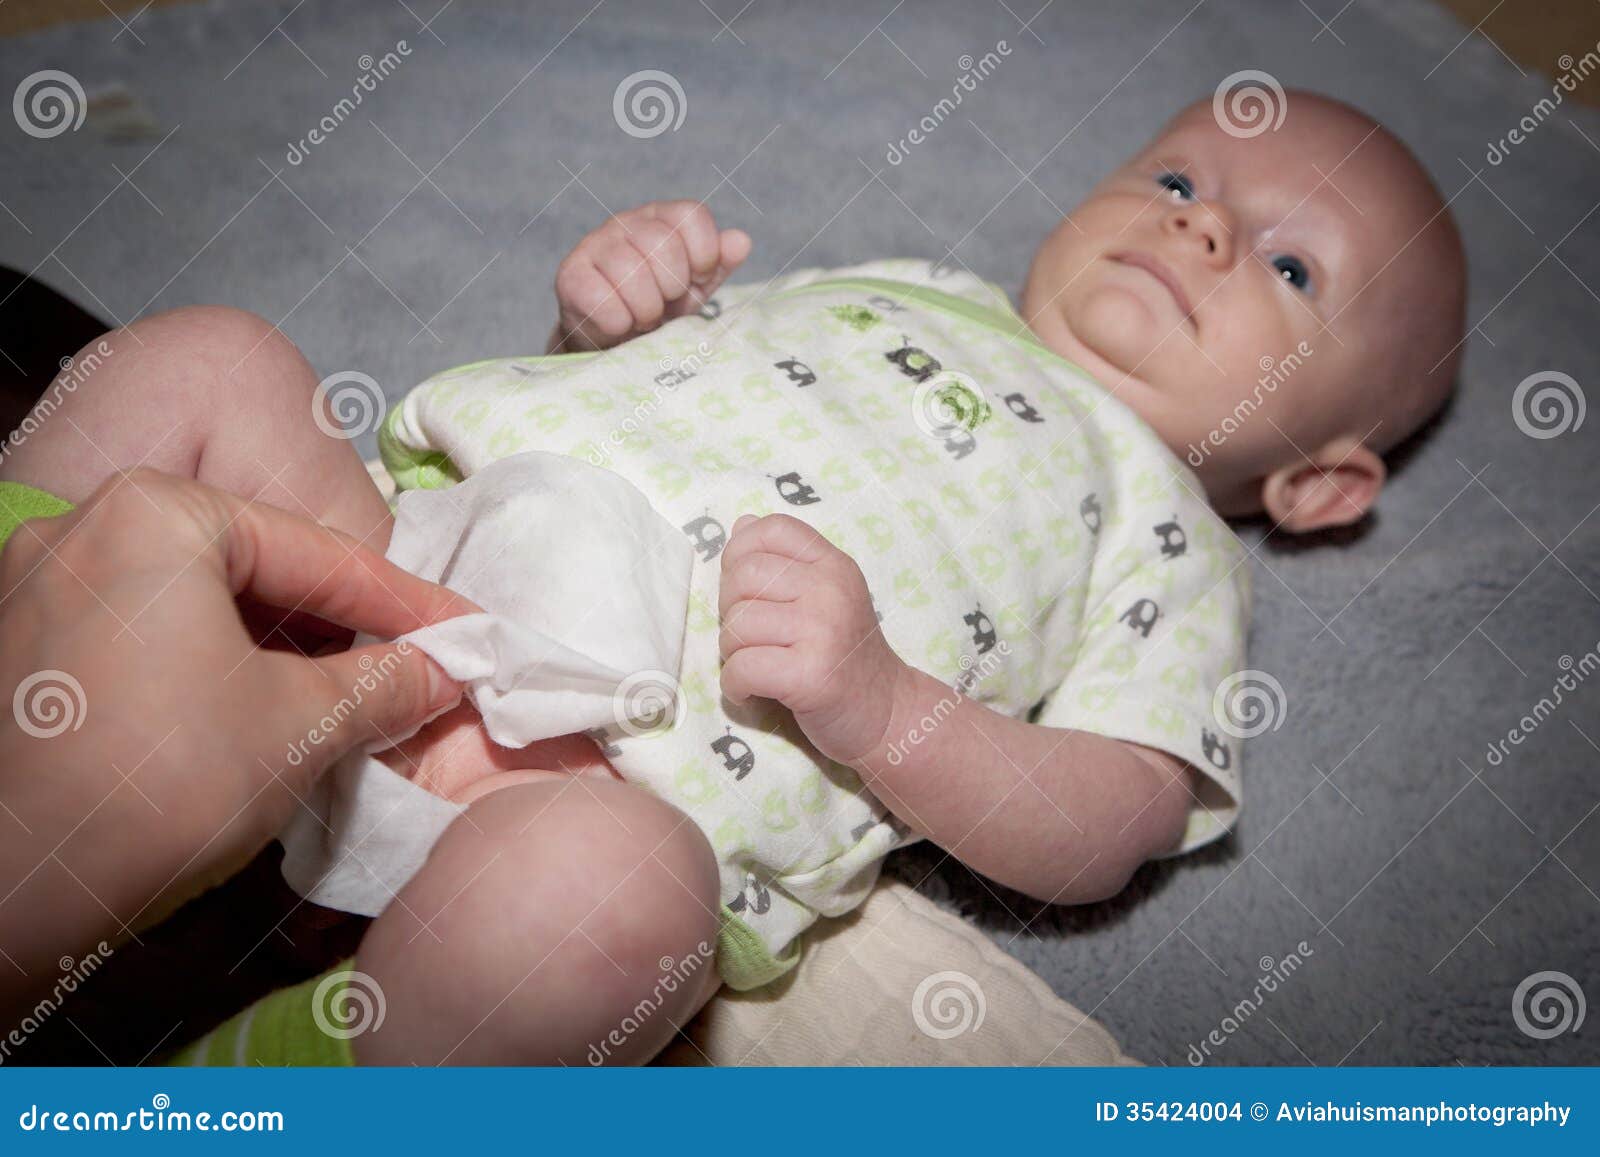 母亲变动尿布 库存图片. 图片 包括有 幸福, 尿布, 更改, 健康, 婴孩, 查找, 婴儿, 卫生学 - 102377697